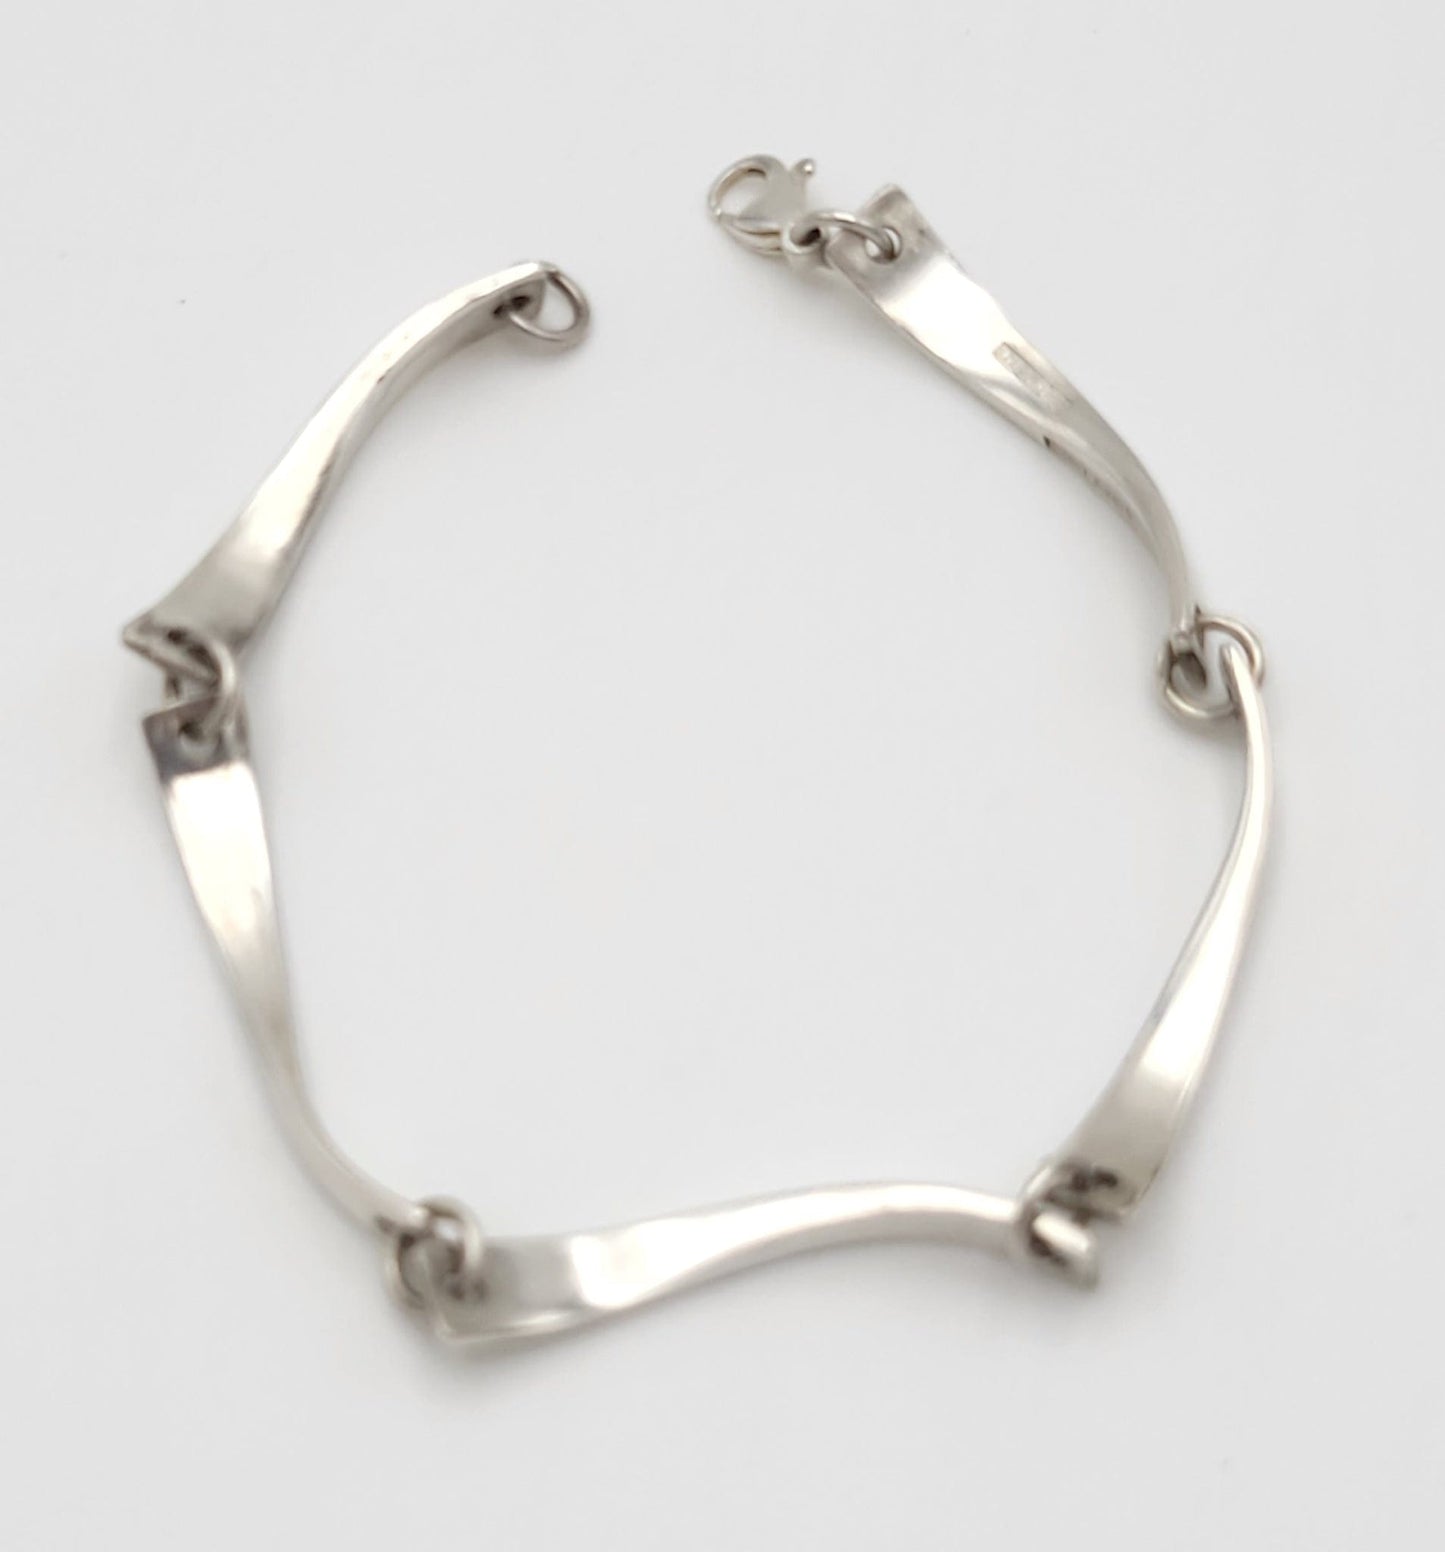 Jaana Toppila Ikalainen Jewelry Finnish Designer Jaana Toppila-Ikalainen Modernist Sterling Panel Link Bracelet 2000